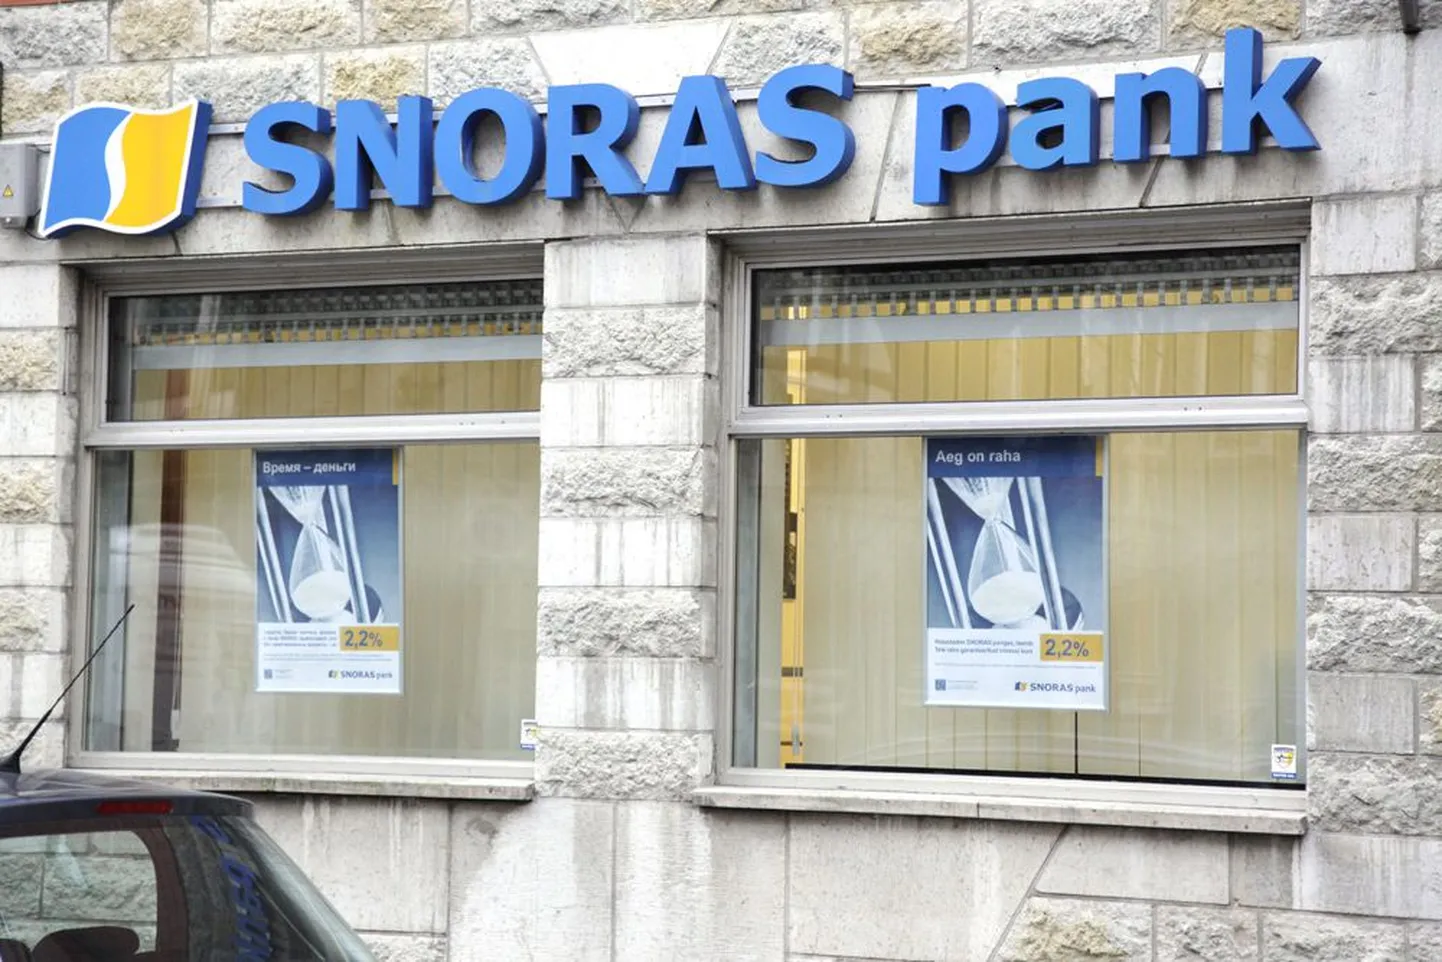 Snorase panga Eesti filiaal.